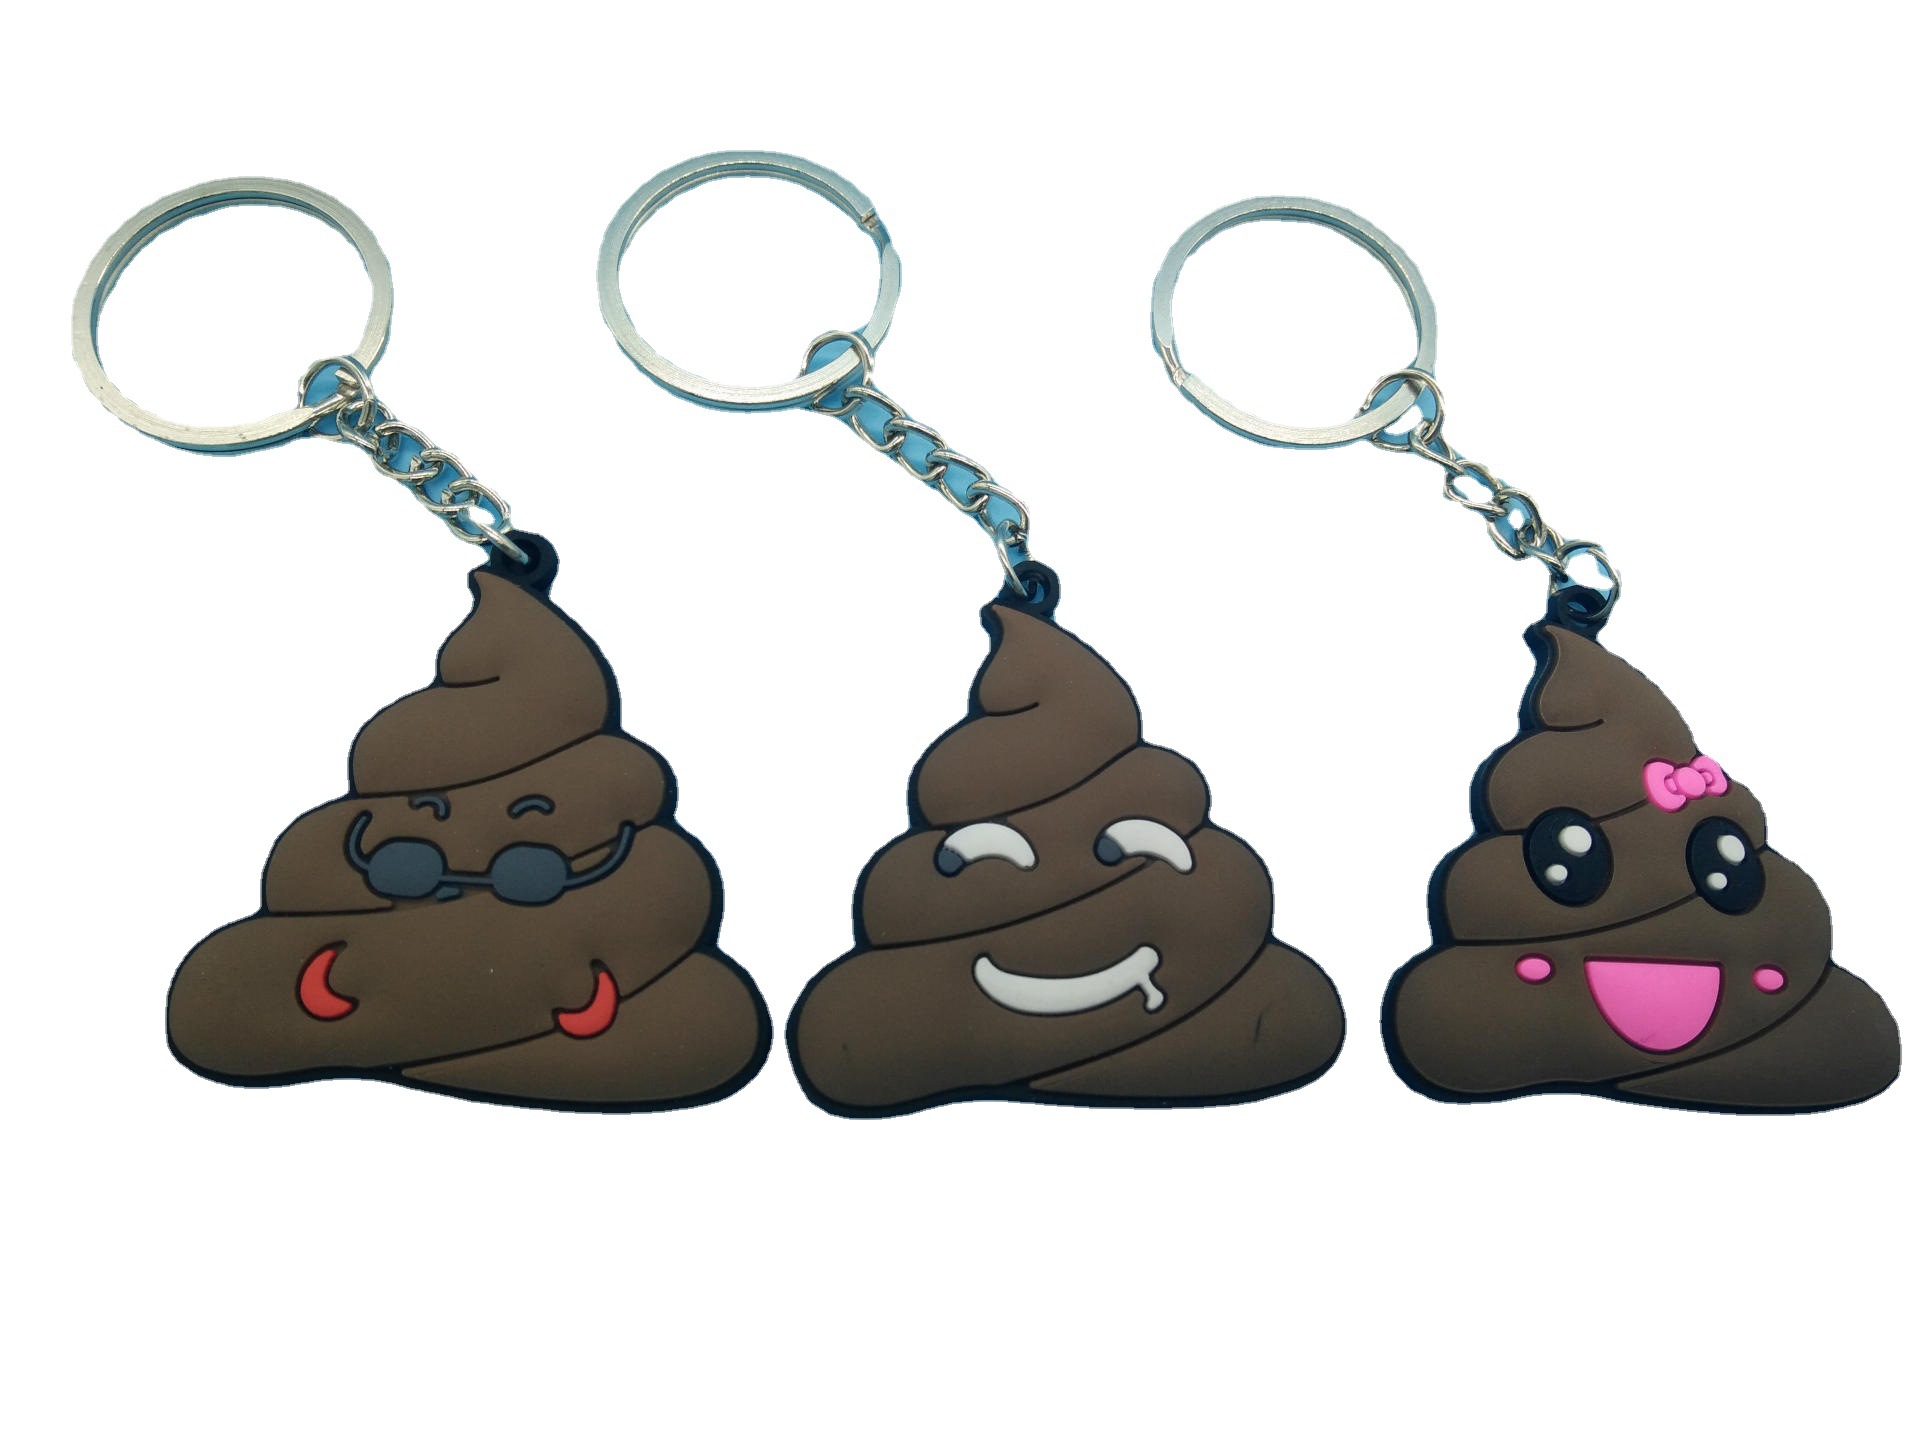 Factory Direct Sales Poop Key Chain Emoji Key Chain PVC Key Chain Silica Gel Key Chain